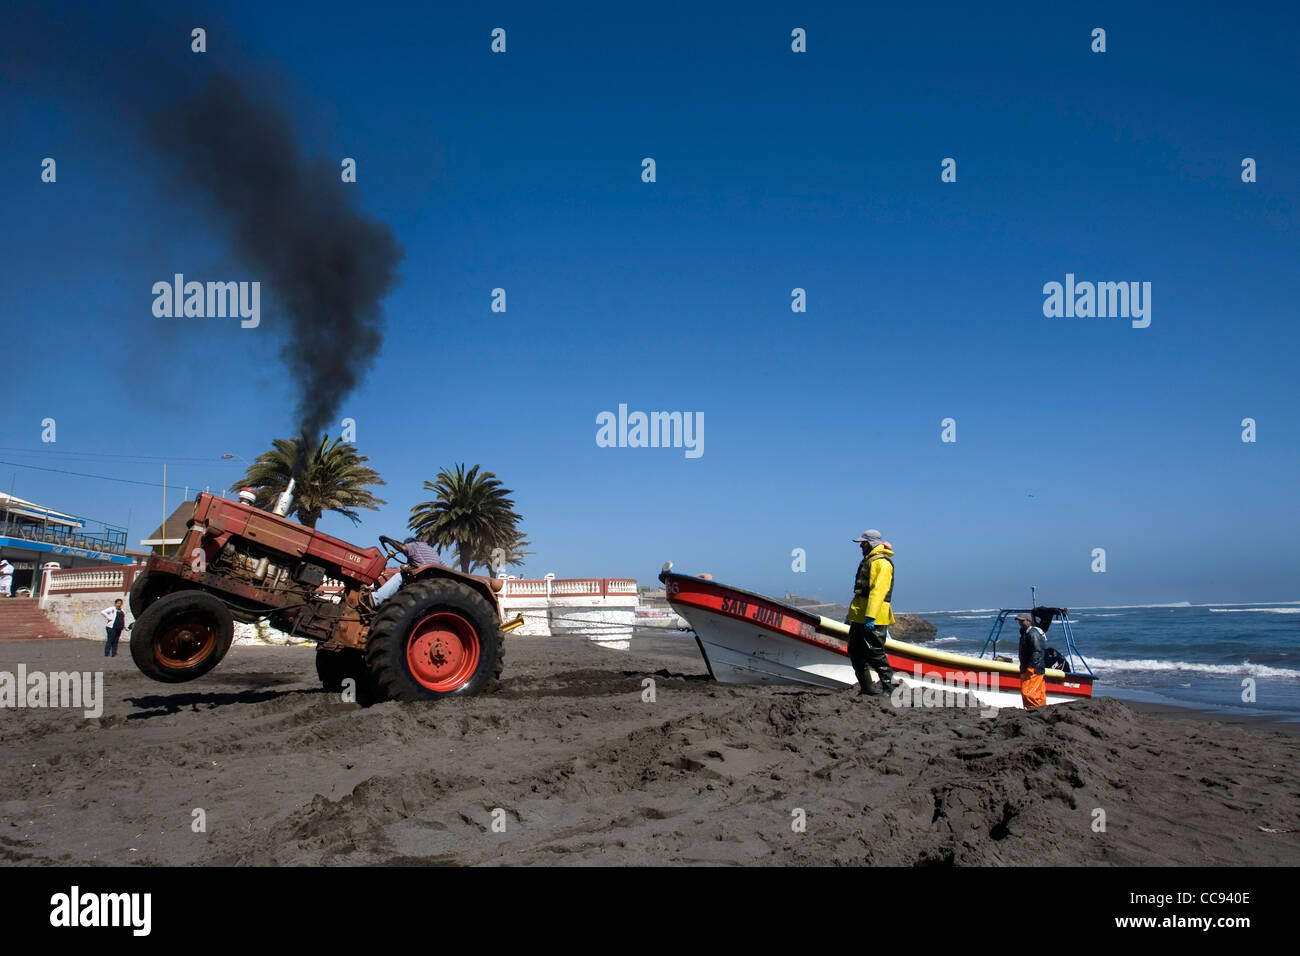 A tractor pulling a boat on shore, Pichilemu beach Chile Stock Photo